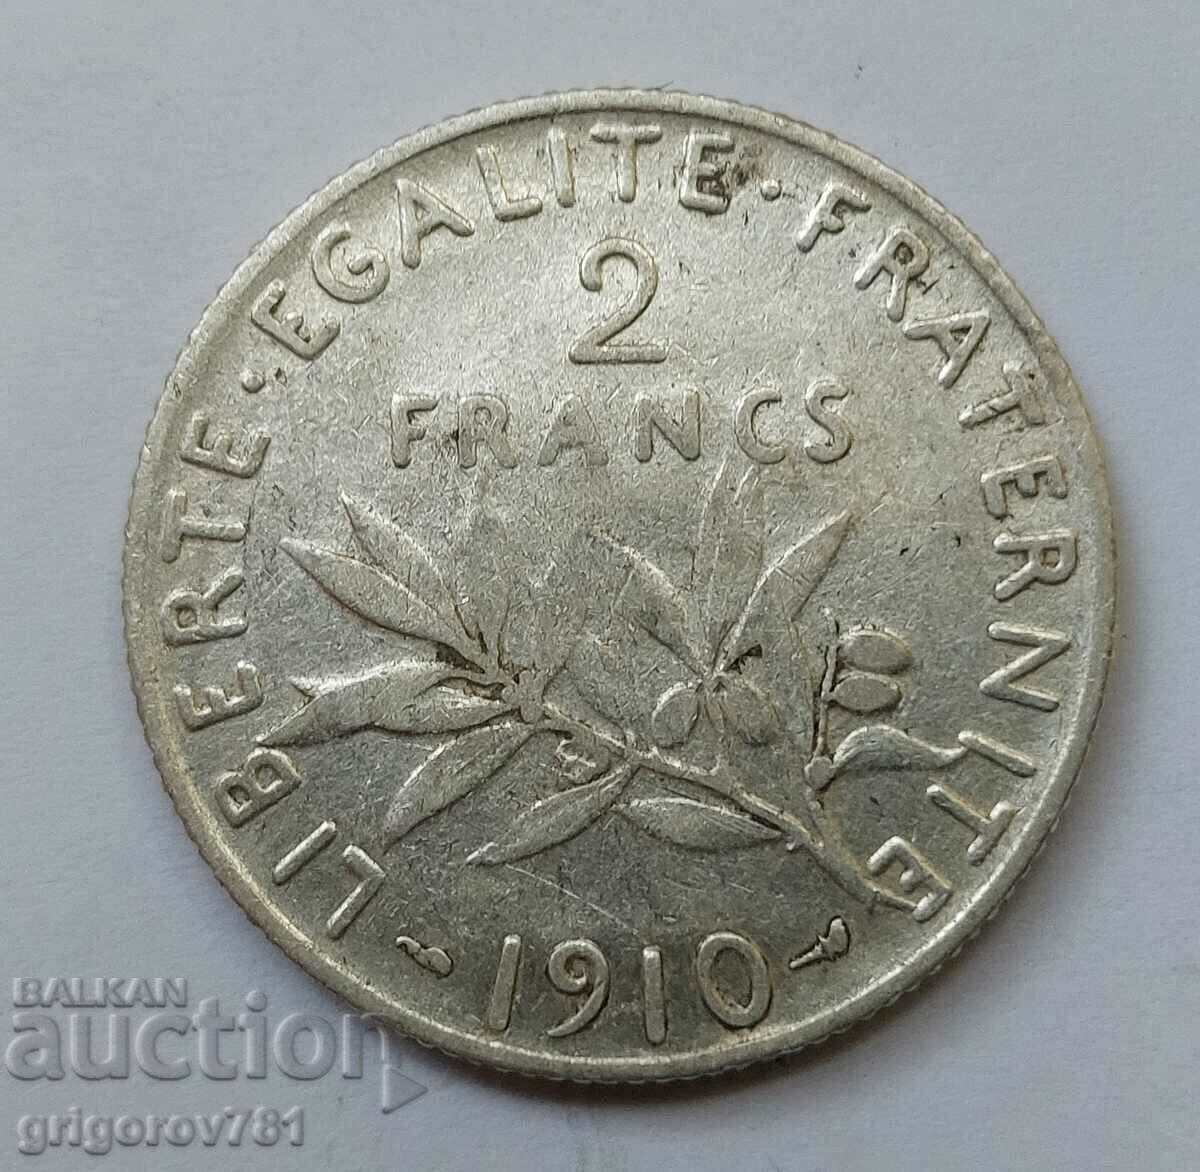 2 Franci Argint Franta 1910 - Moneda de argint #148